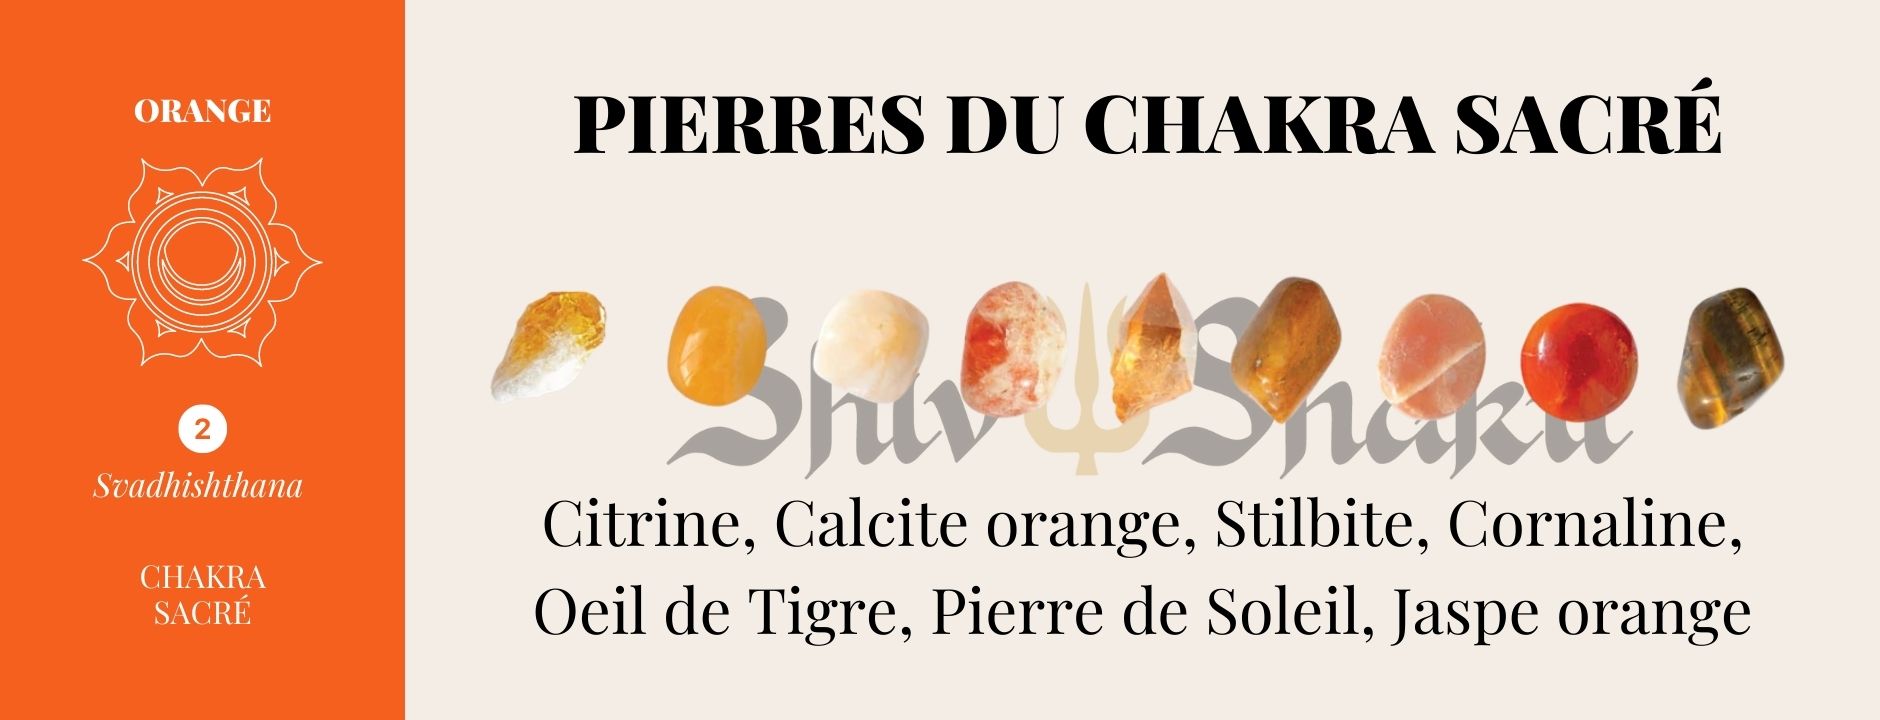 Pierres du chakra orange